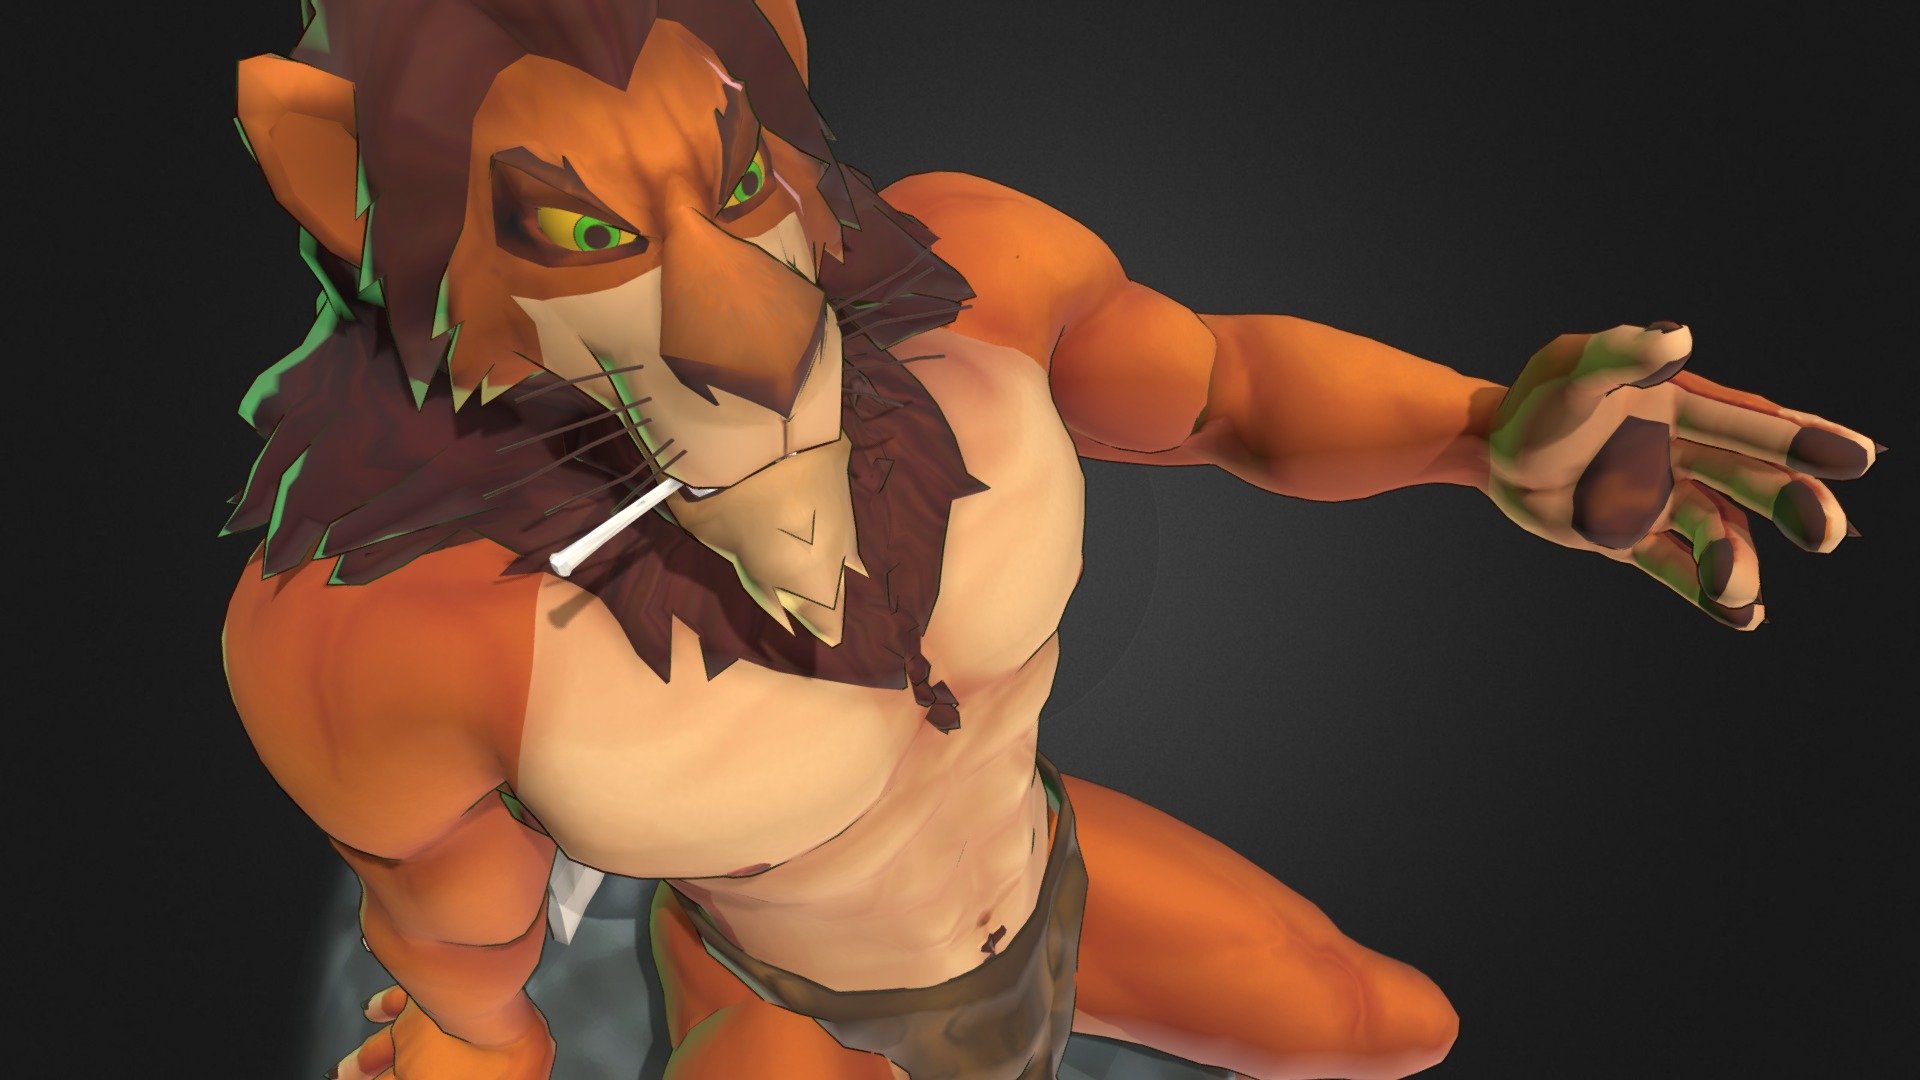 The lion king 一 Scar (doujin) - 3D model by 金日比卓狼 (@jj48082001) 3d model